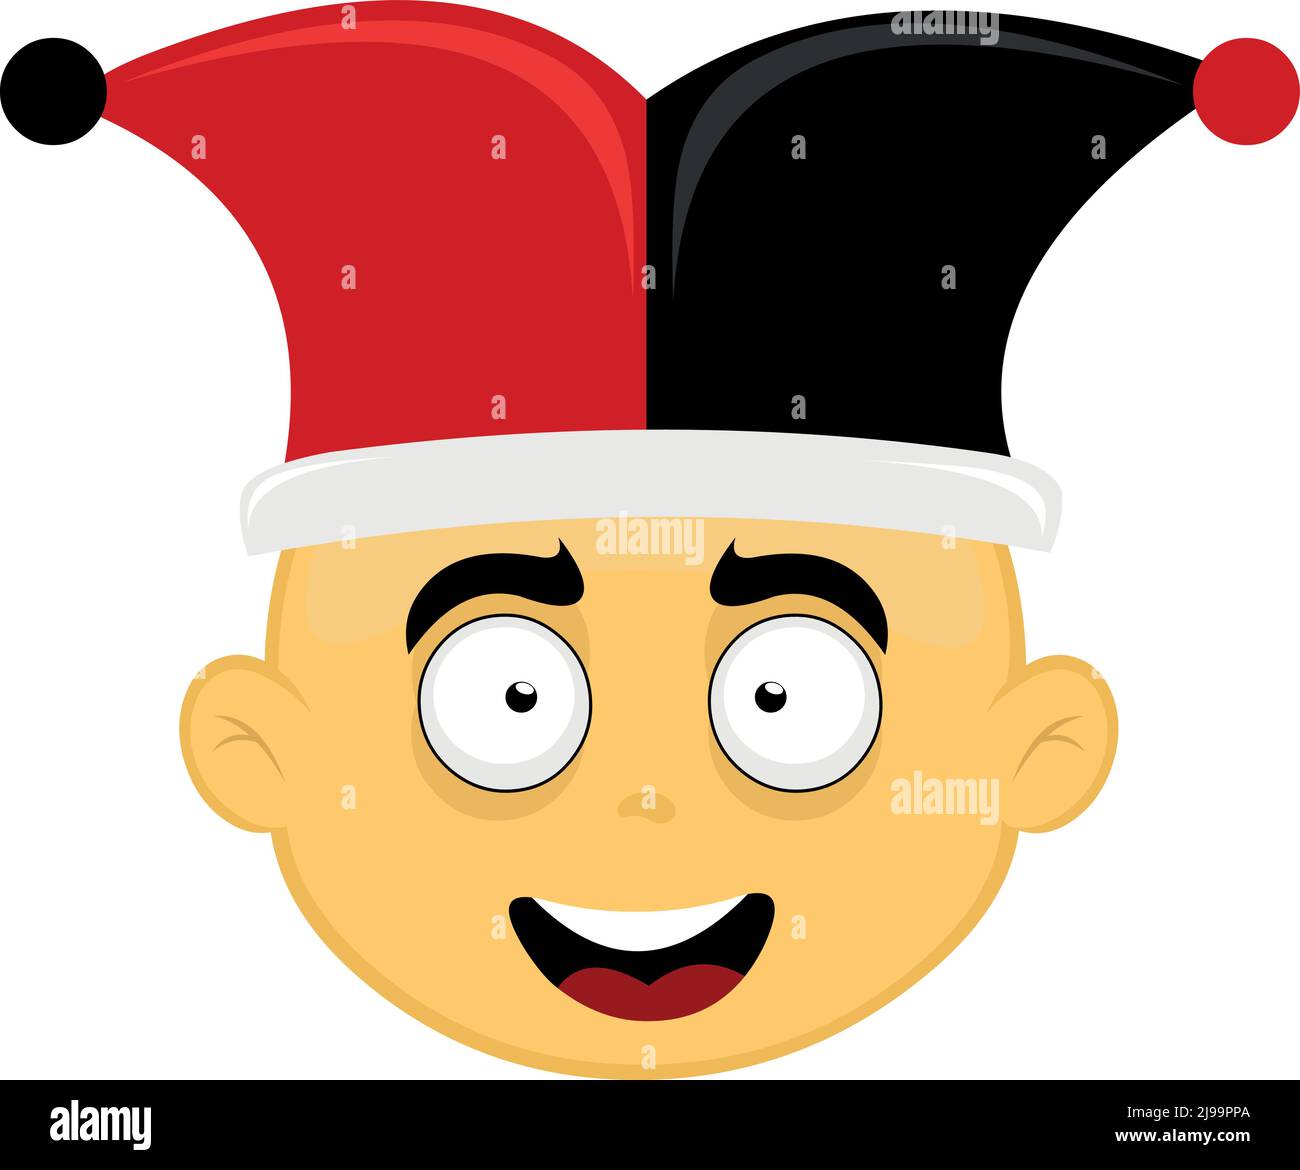 Illustration vectorielle du visage d'un personnage de dessin animé jaune avec un chapeau de jester d'arlequin noir et rouge Illustration de Vecteur